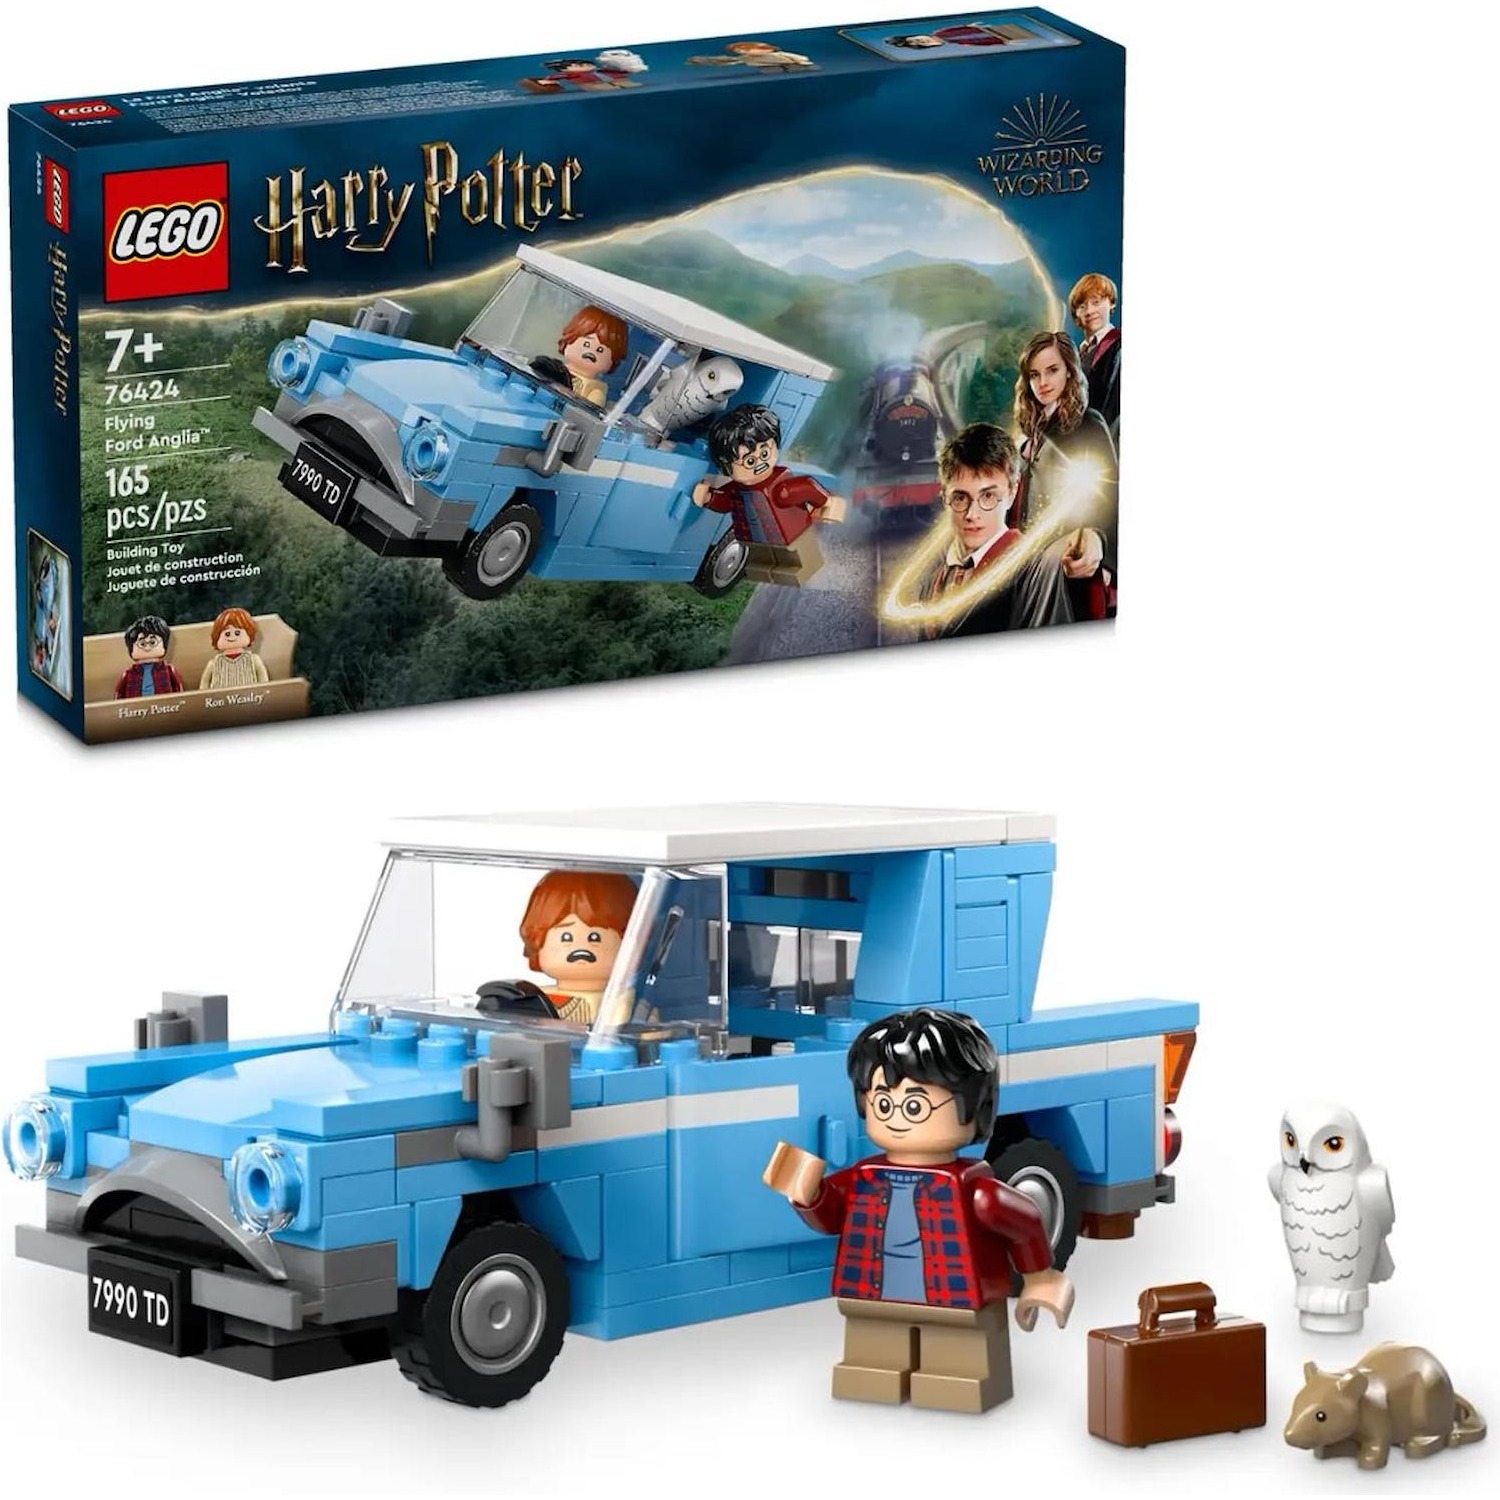 Immagine per Lego Harry Potter Ford Anglia volante da DIMOStore